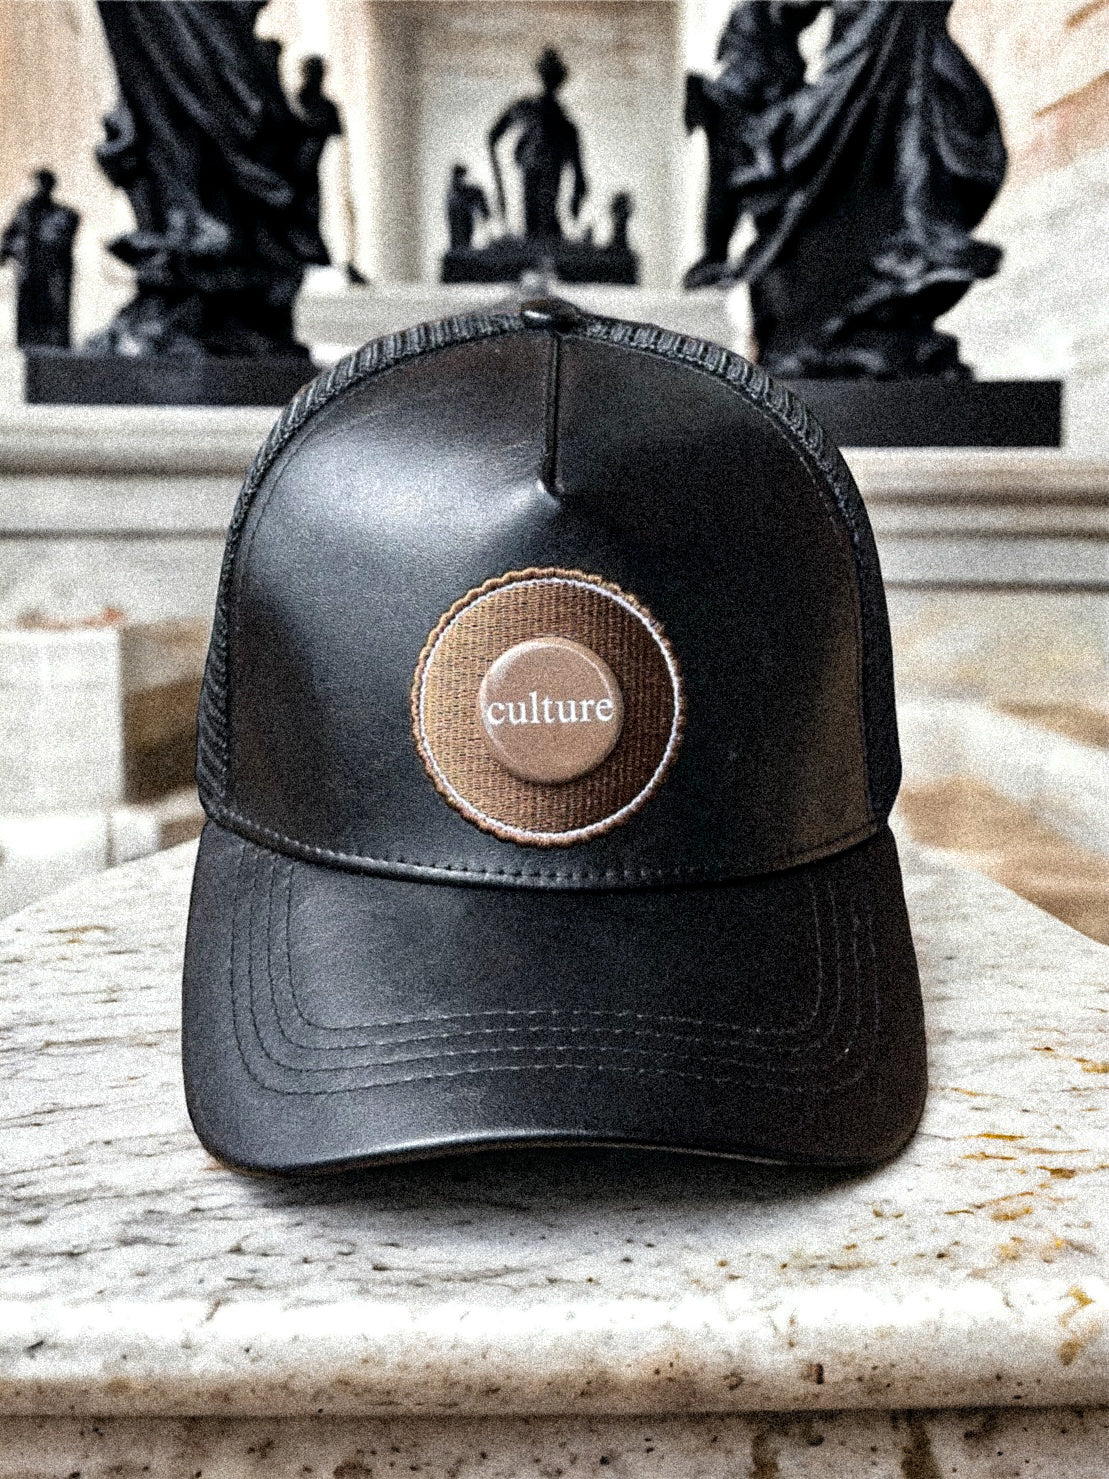 Mr.LIMOU - haut de gamme casquette noir cuir similicuir Eclipse Ebene Culture Edition 3